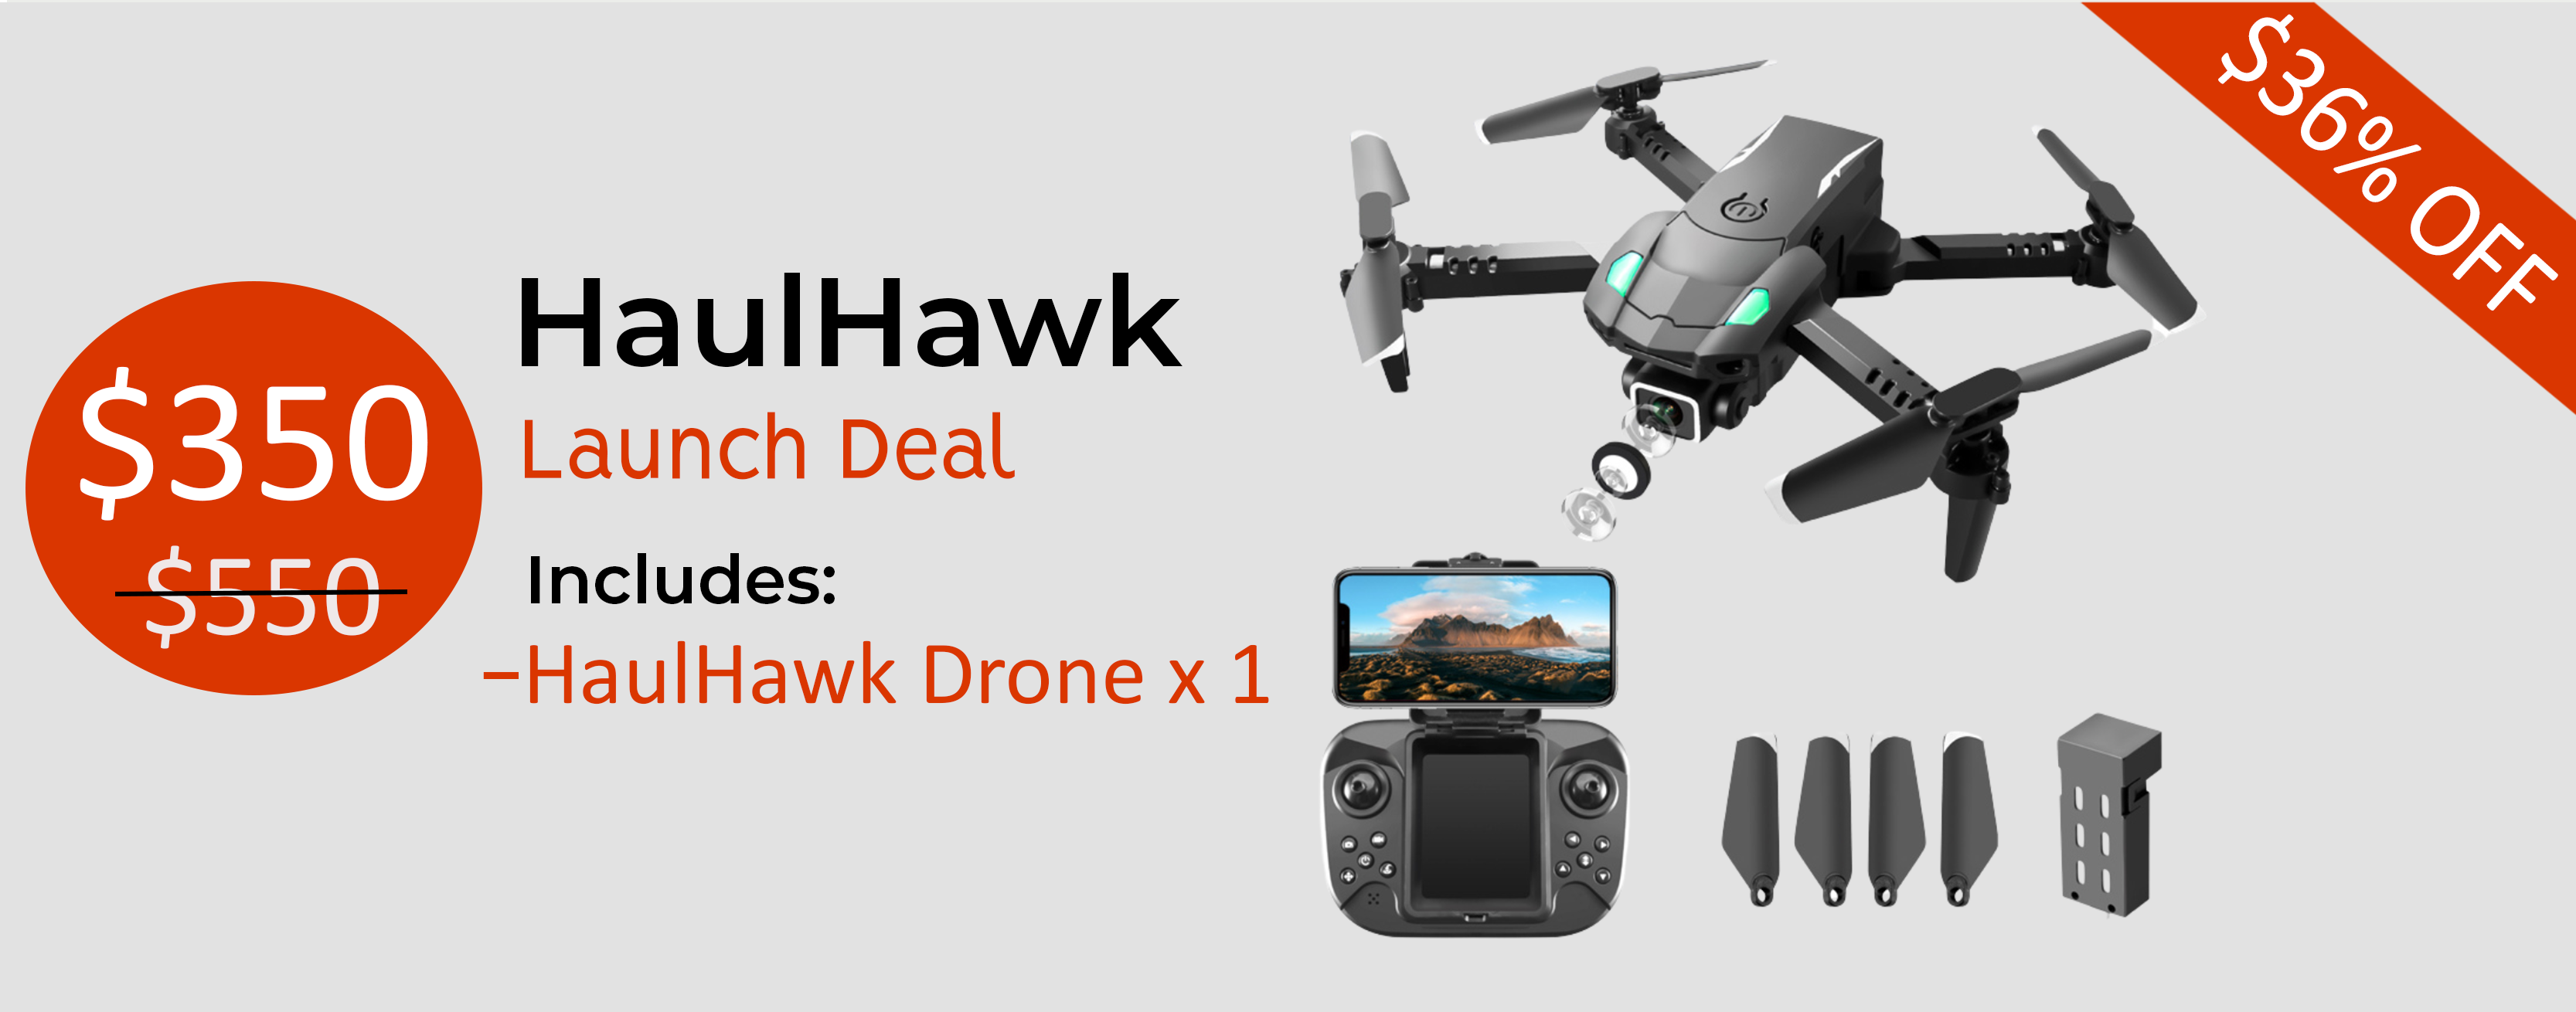 HaulHawk Drone Camera x 1

